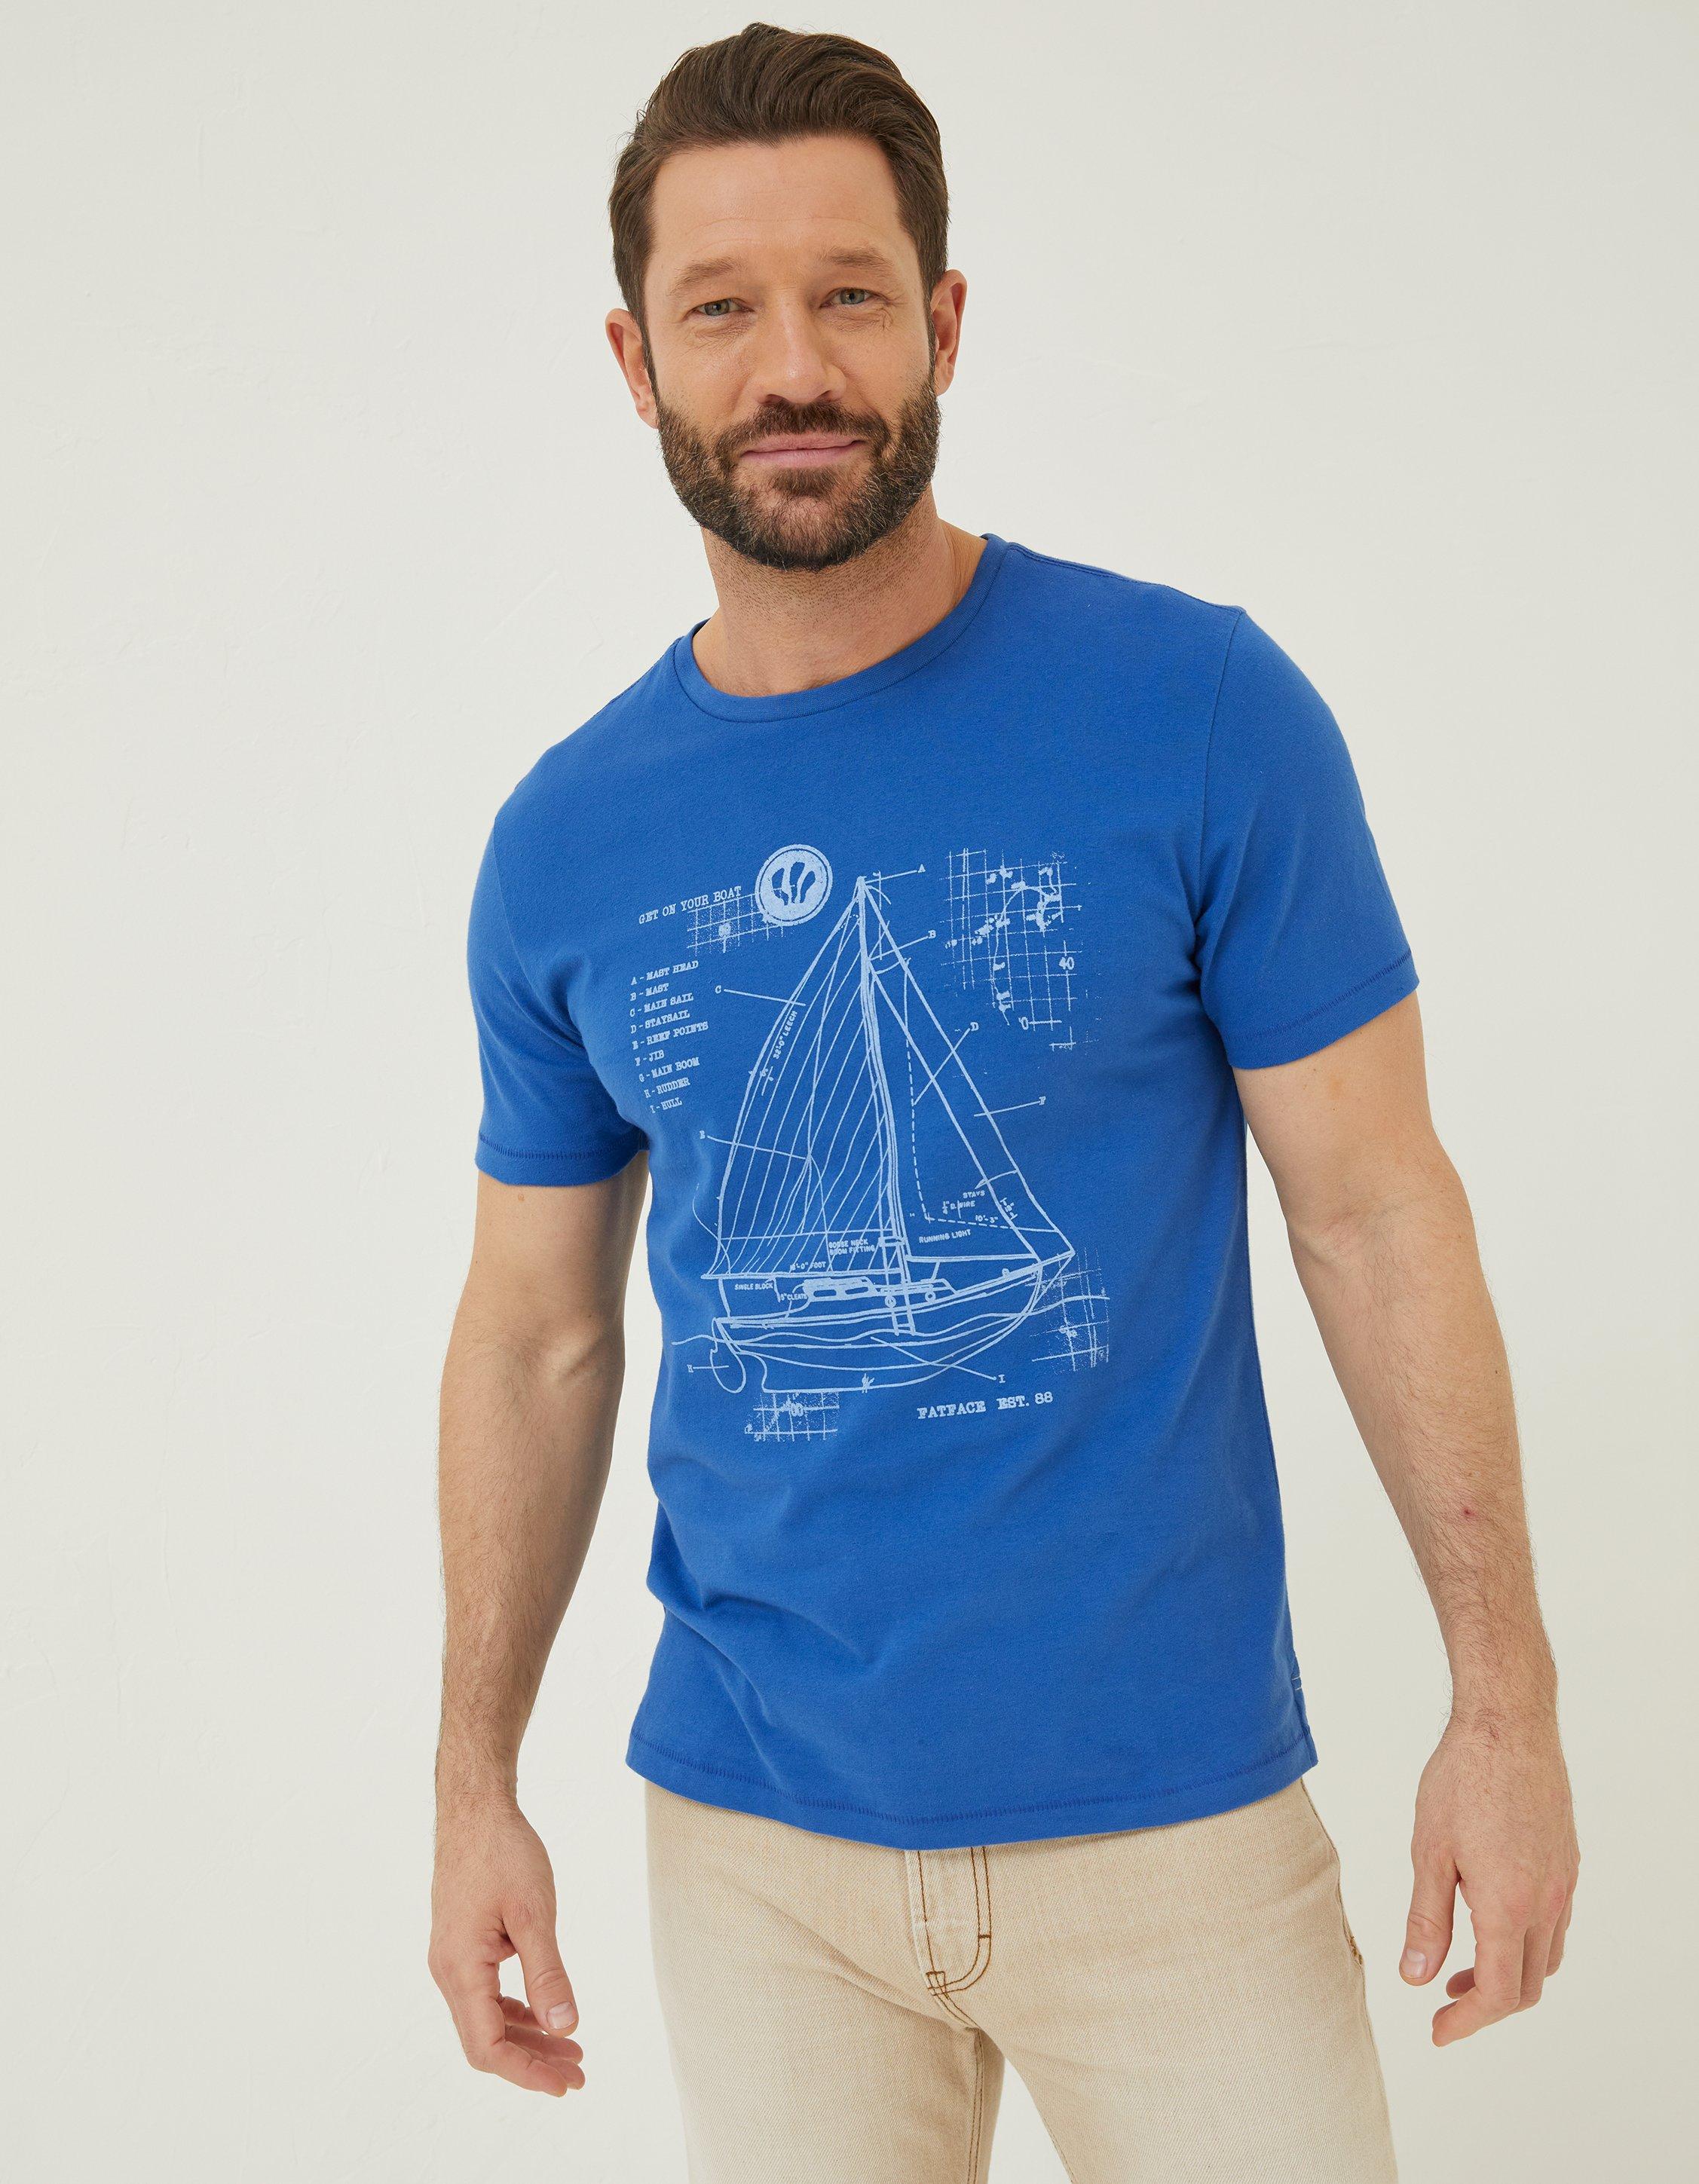 Sail Boat Sketch T-Shirt, T-Shirts